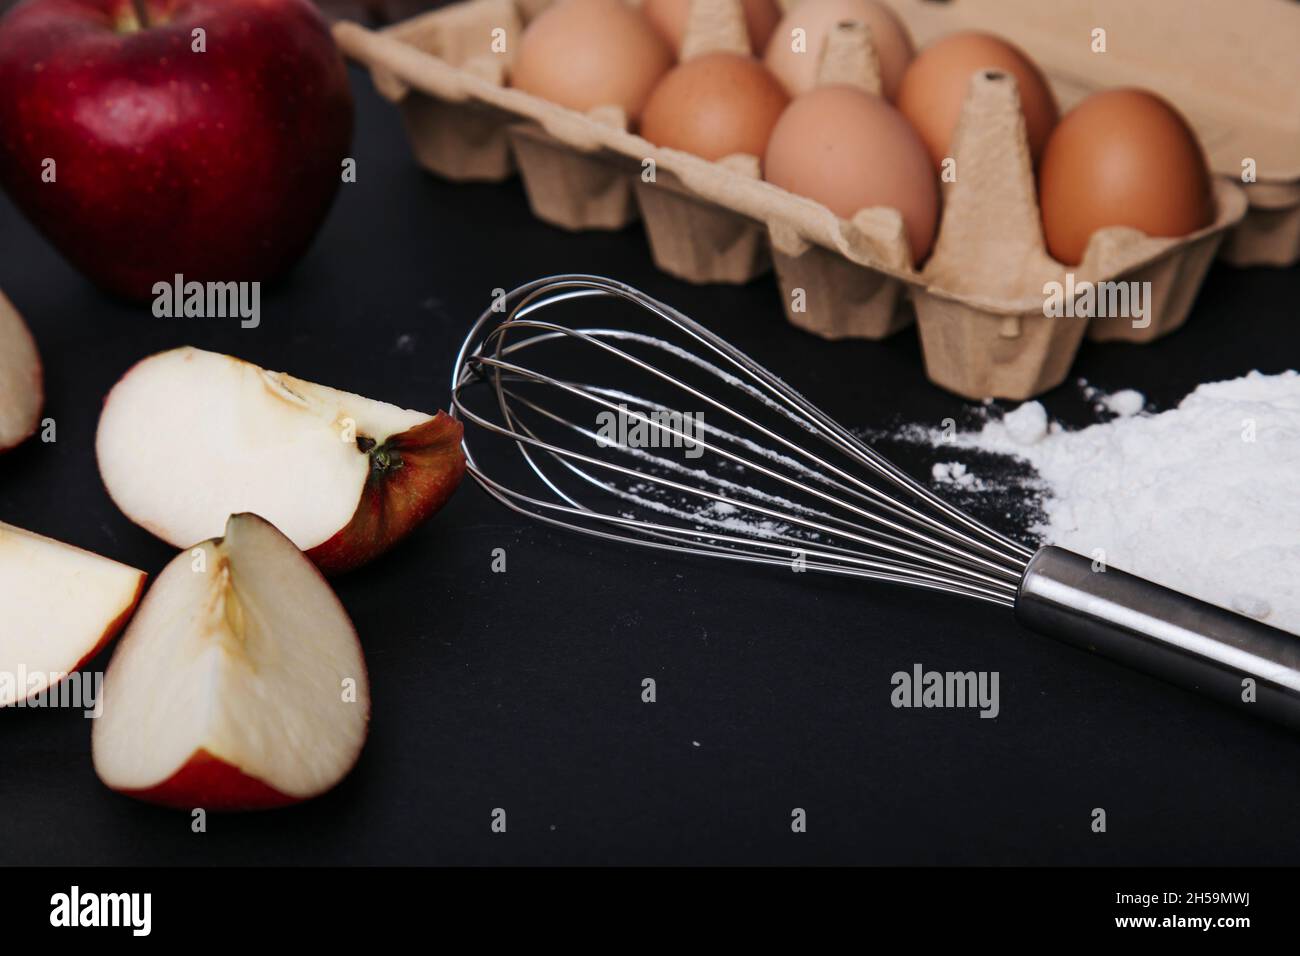 apple pie ingredients Stock Photo - Alamy